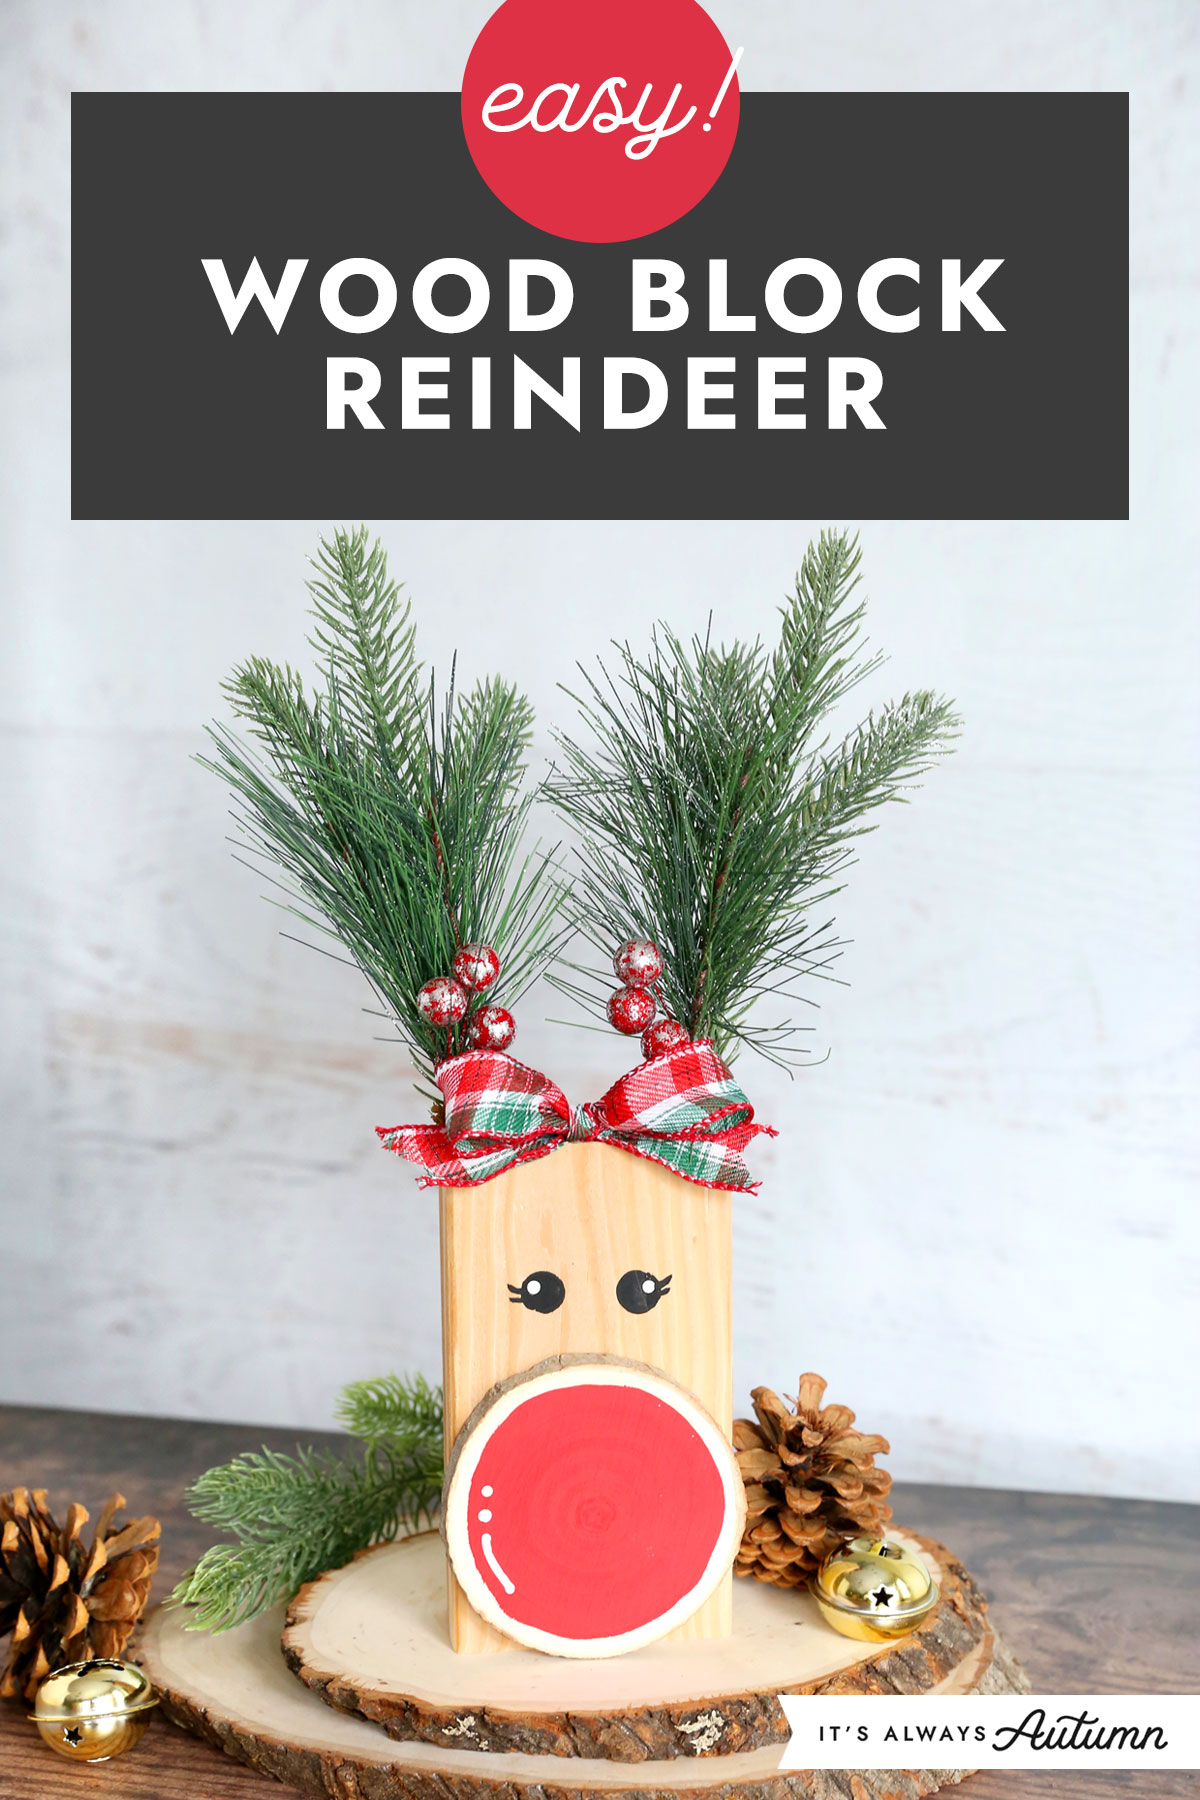 Easy! Wood block reindeer.